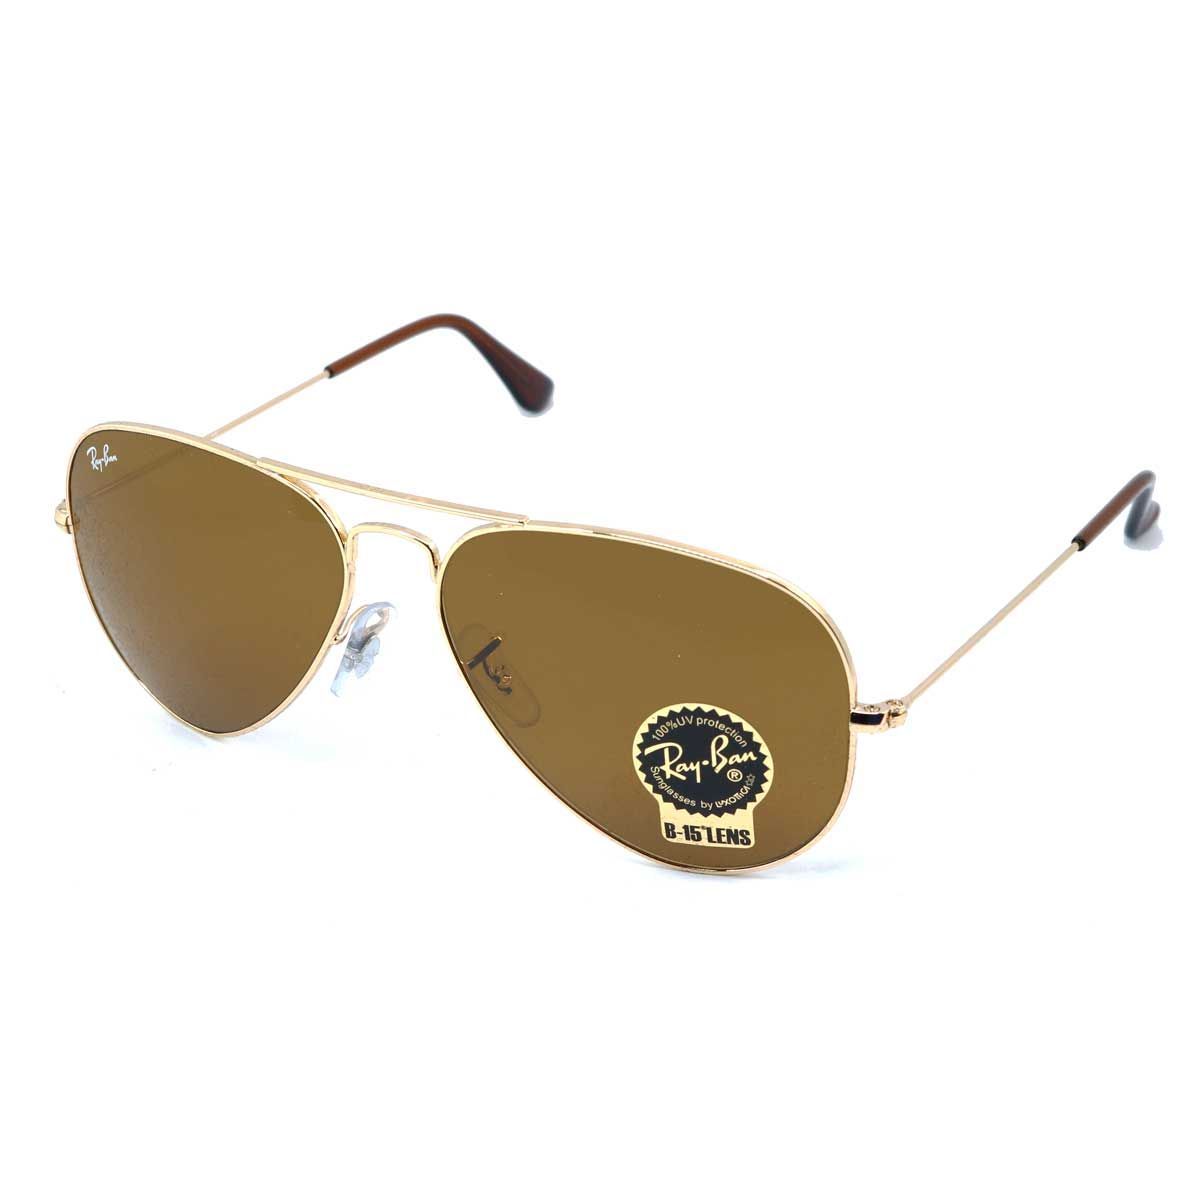 Aviator Sunglasses RB3025 001 33 - size 58